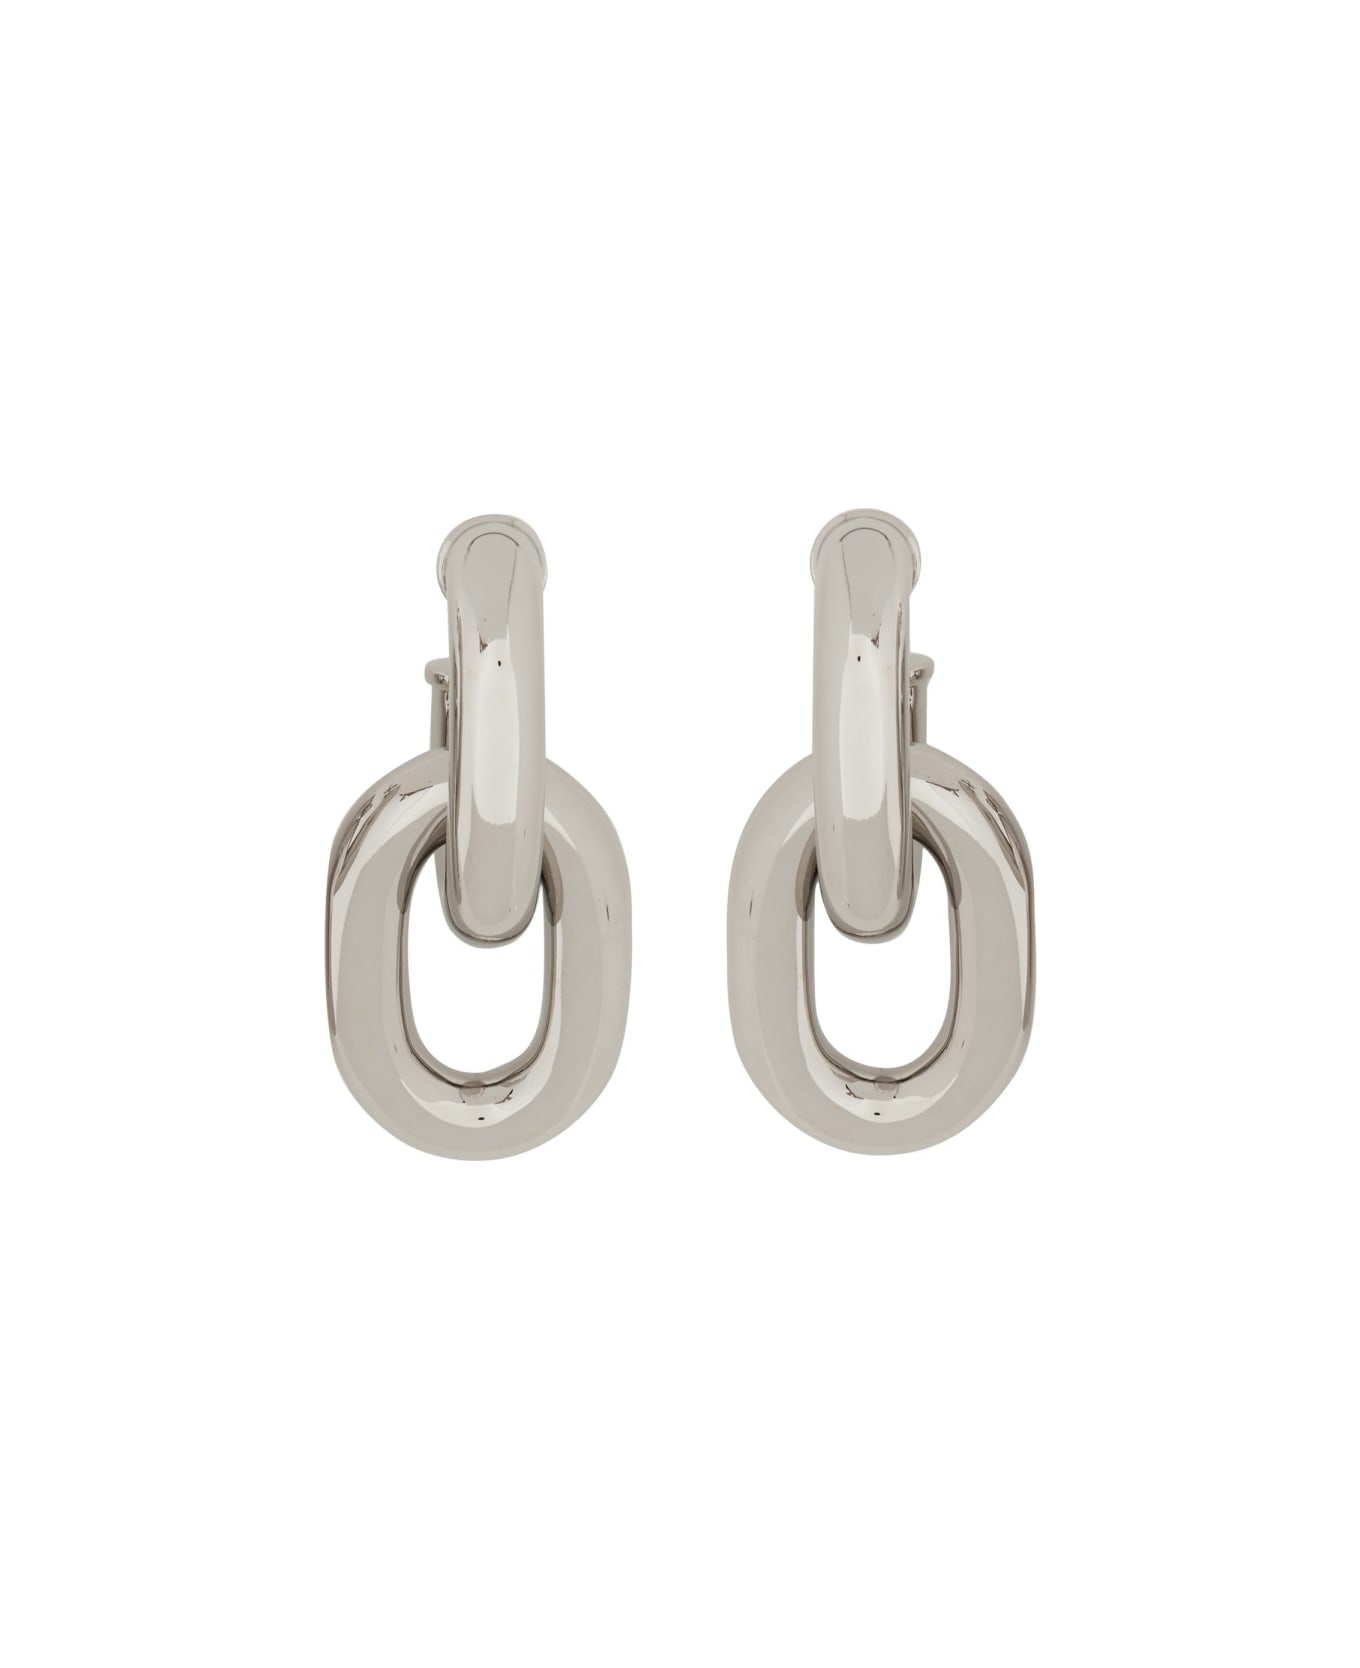 Paco Rabanne Double Hoop Earrings Xl Link - SILVER イヤリング